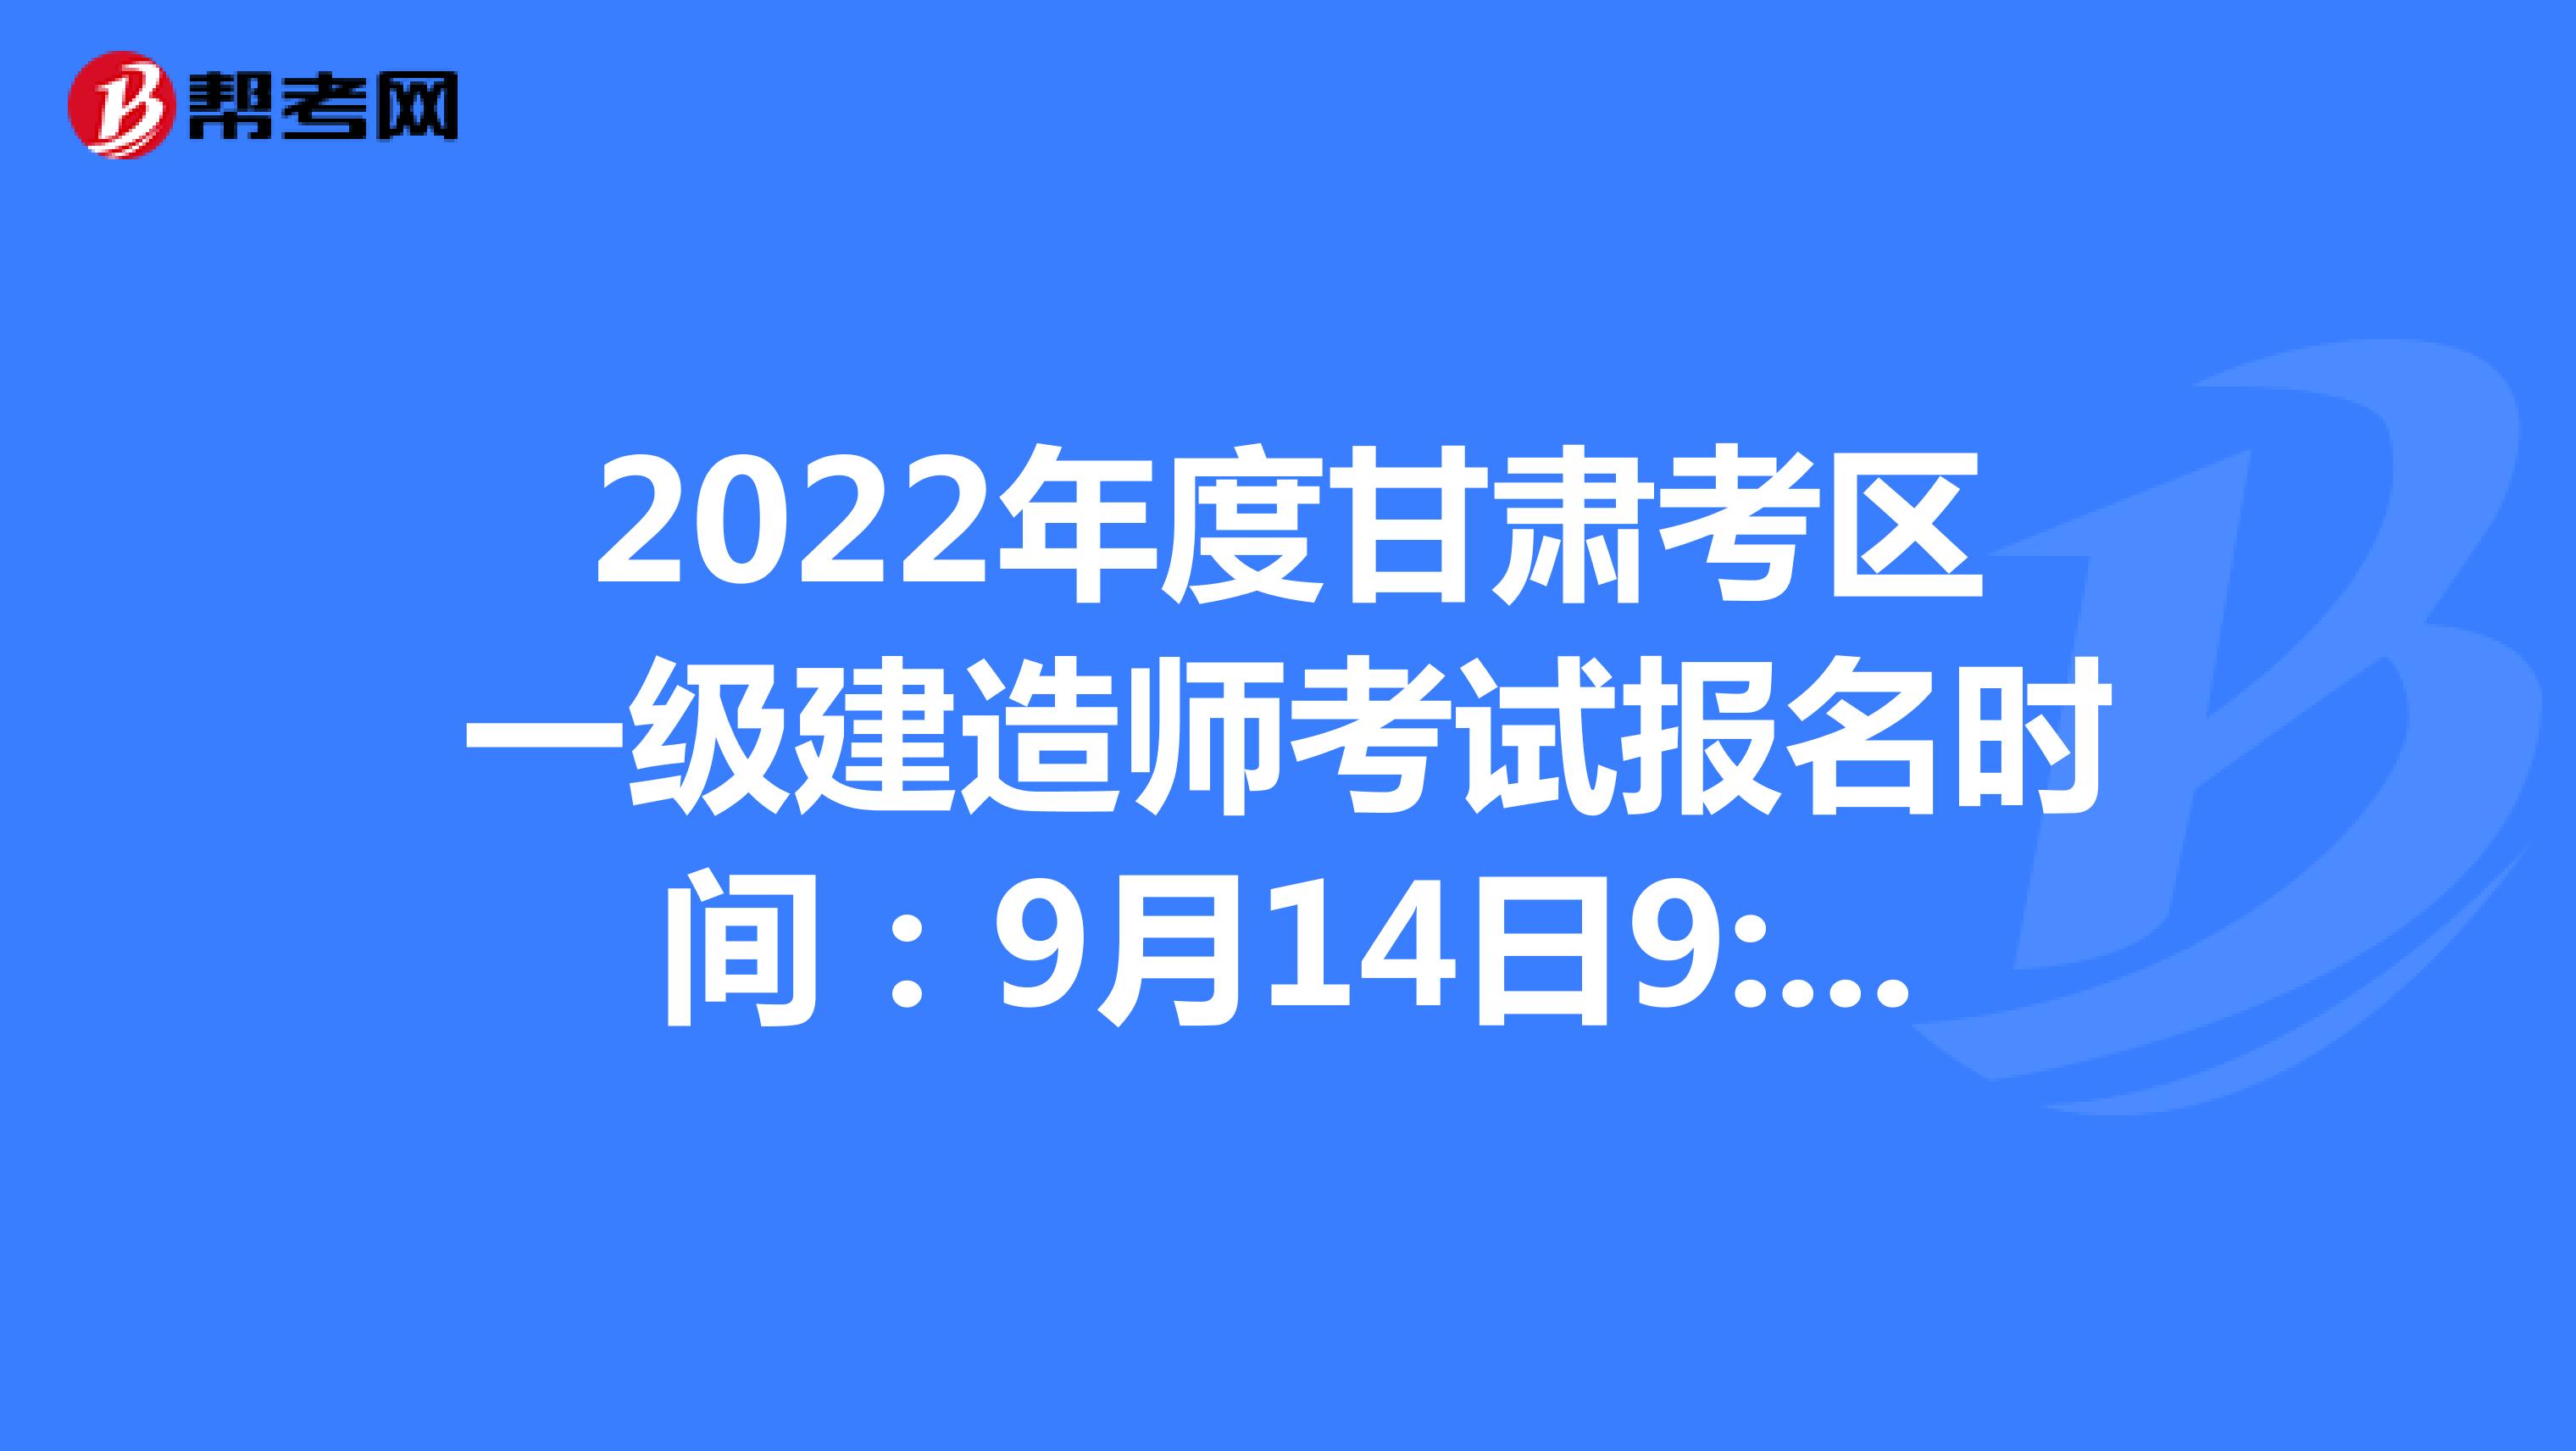 2022年度甘肃考区一级建造师考试报名时间：9月14日9:00至9月21日18:00